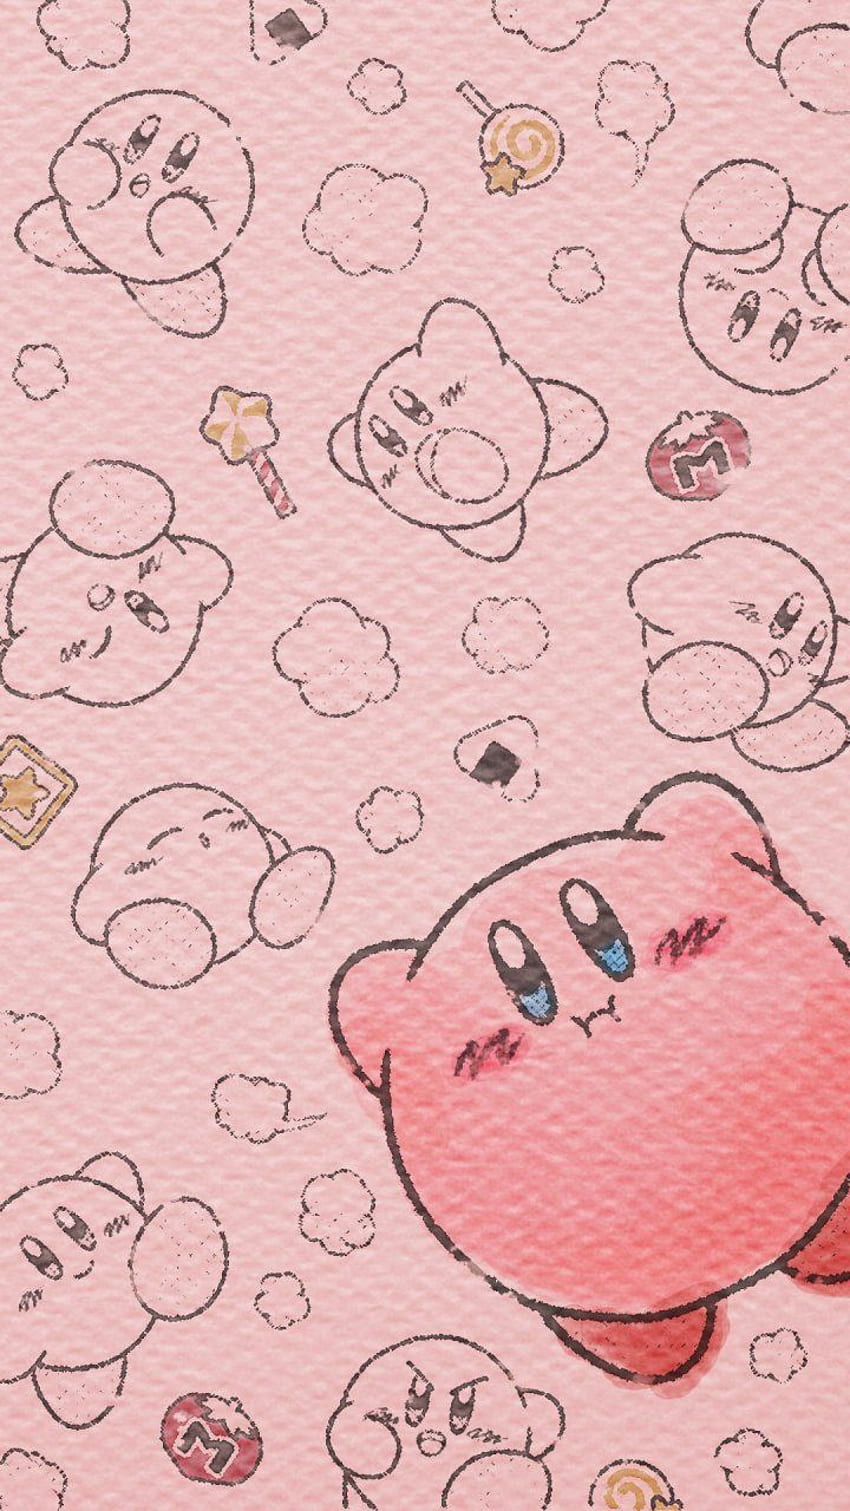 Adorable Kirby - Kirby đáng yêu - Hãy đến với chúng tôi để nhận được cảm giác xúc động và yêu thương khi chiêm ngưỡng các bức ảnh về Kirby đáng yêu. Sẽ là một trải nghiệm tuyệt vời để khám phá thế giới của Kirby.